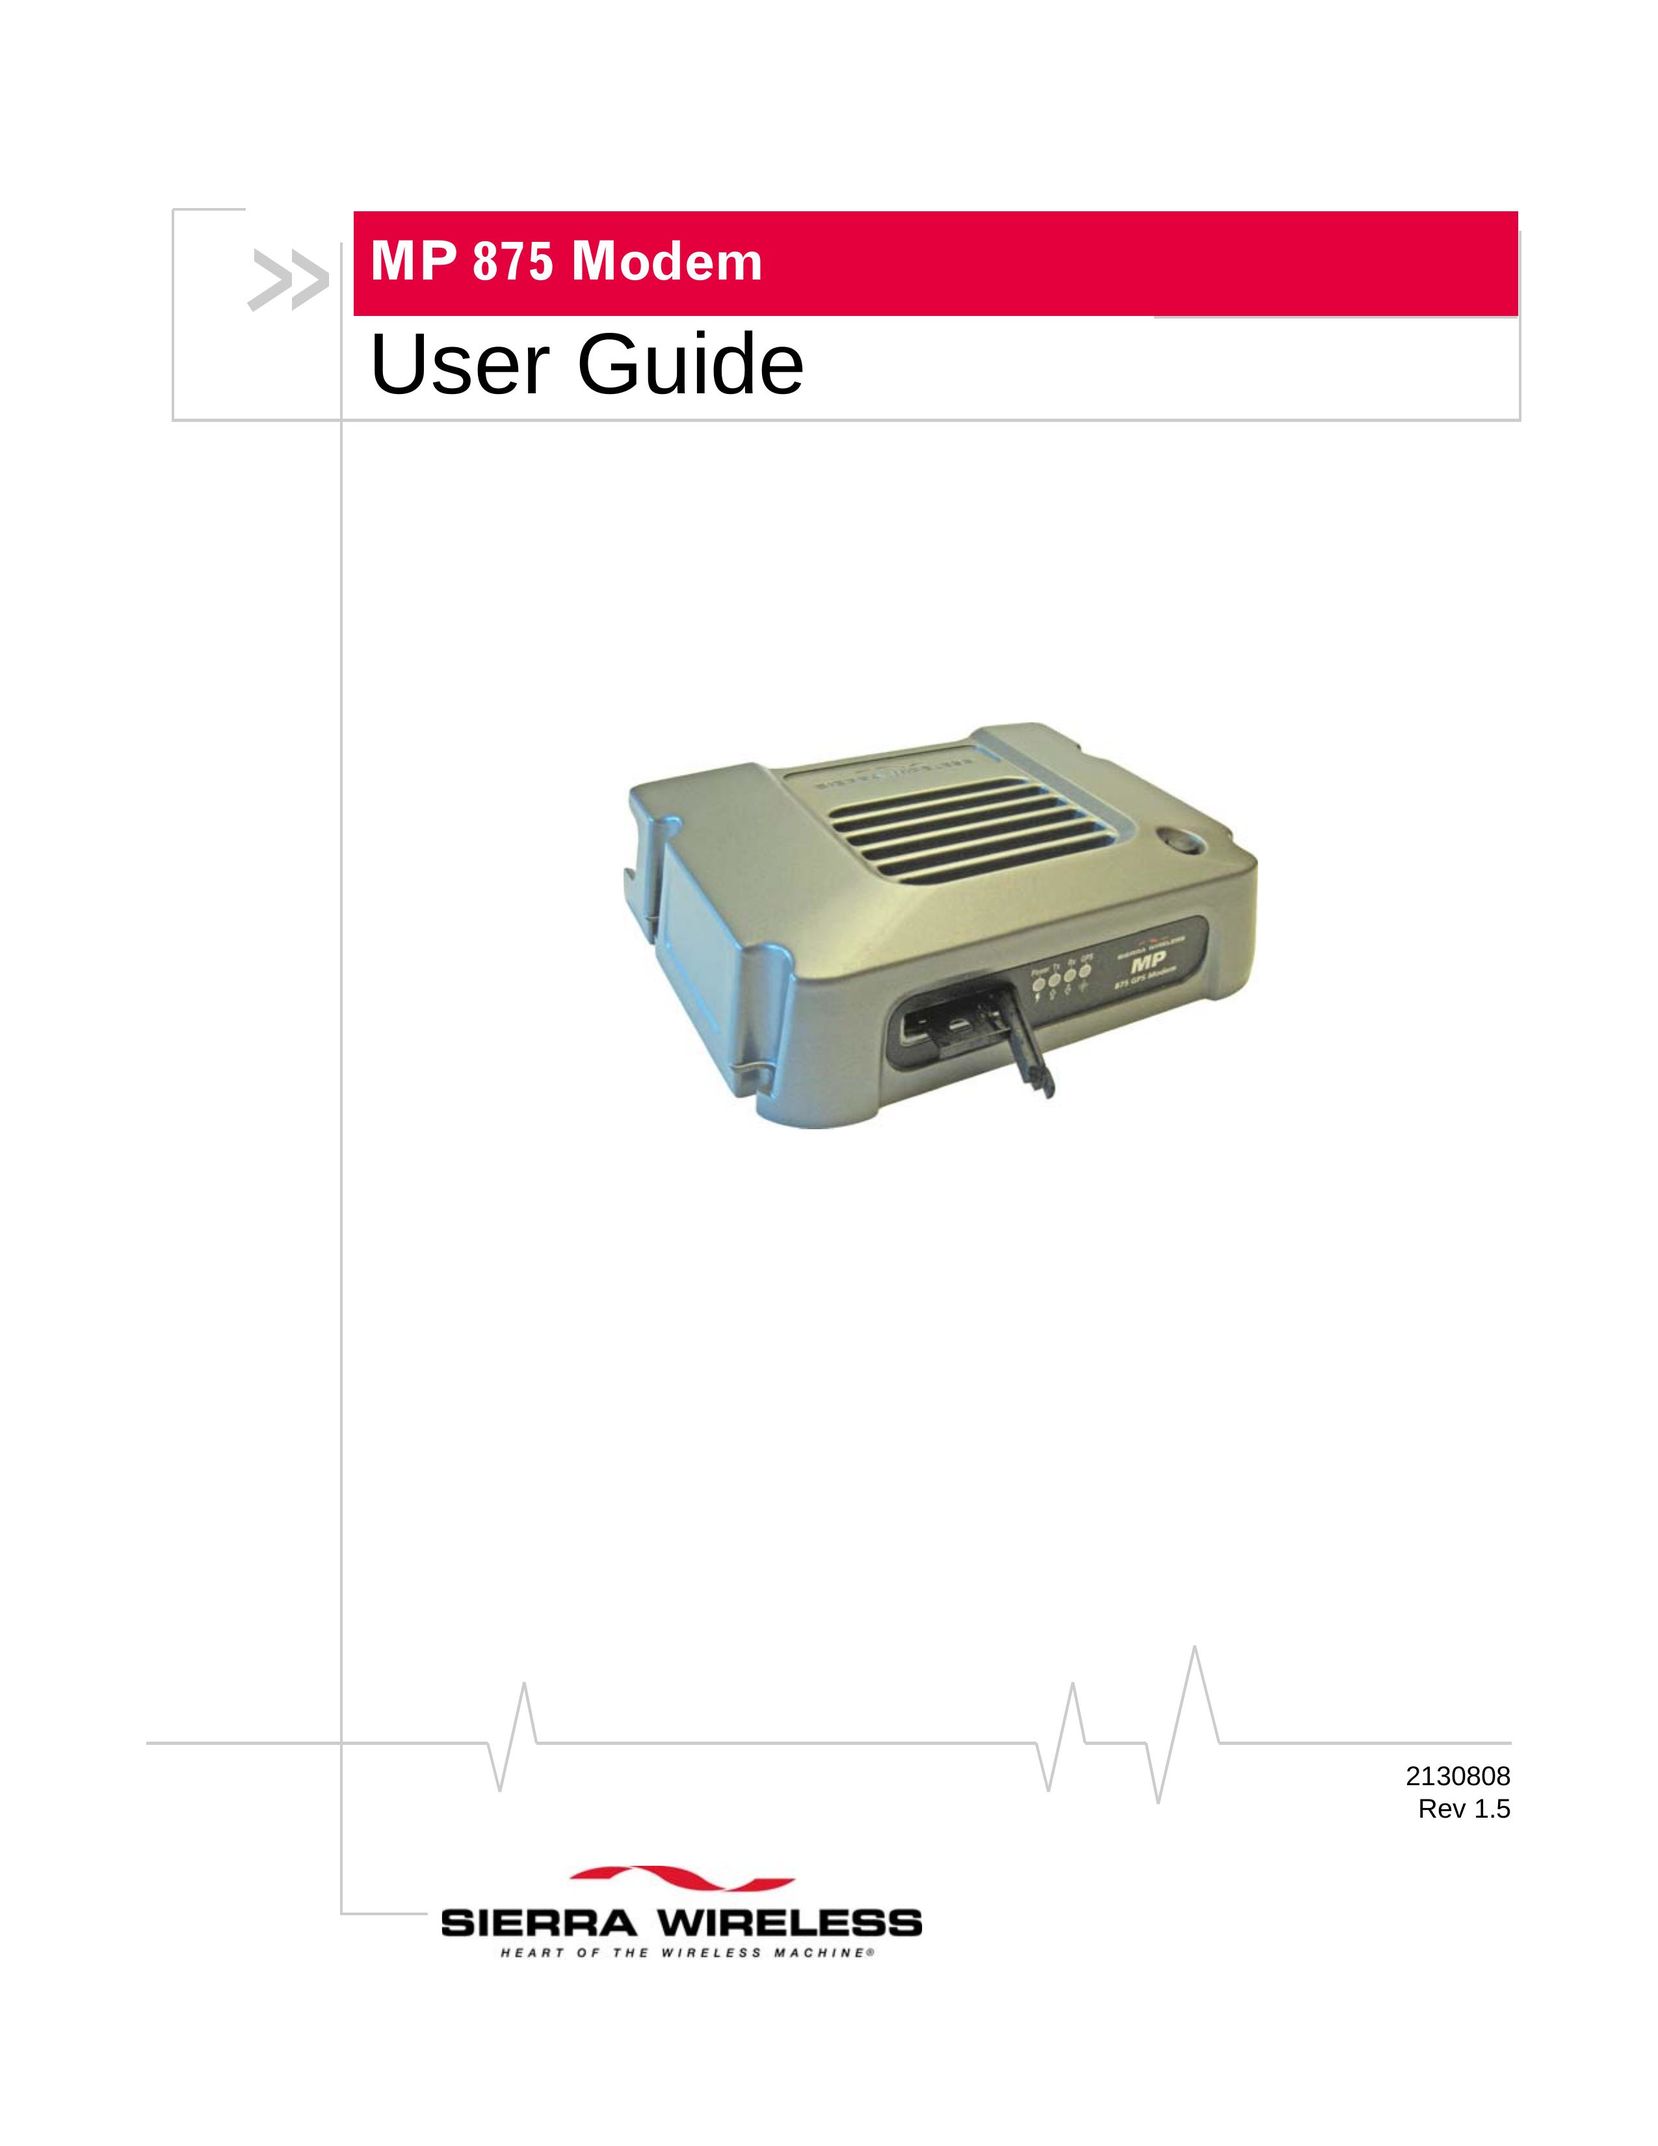 Sierra Wireless MP 875 Modem User Manual